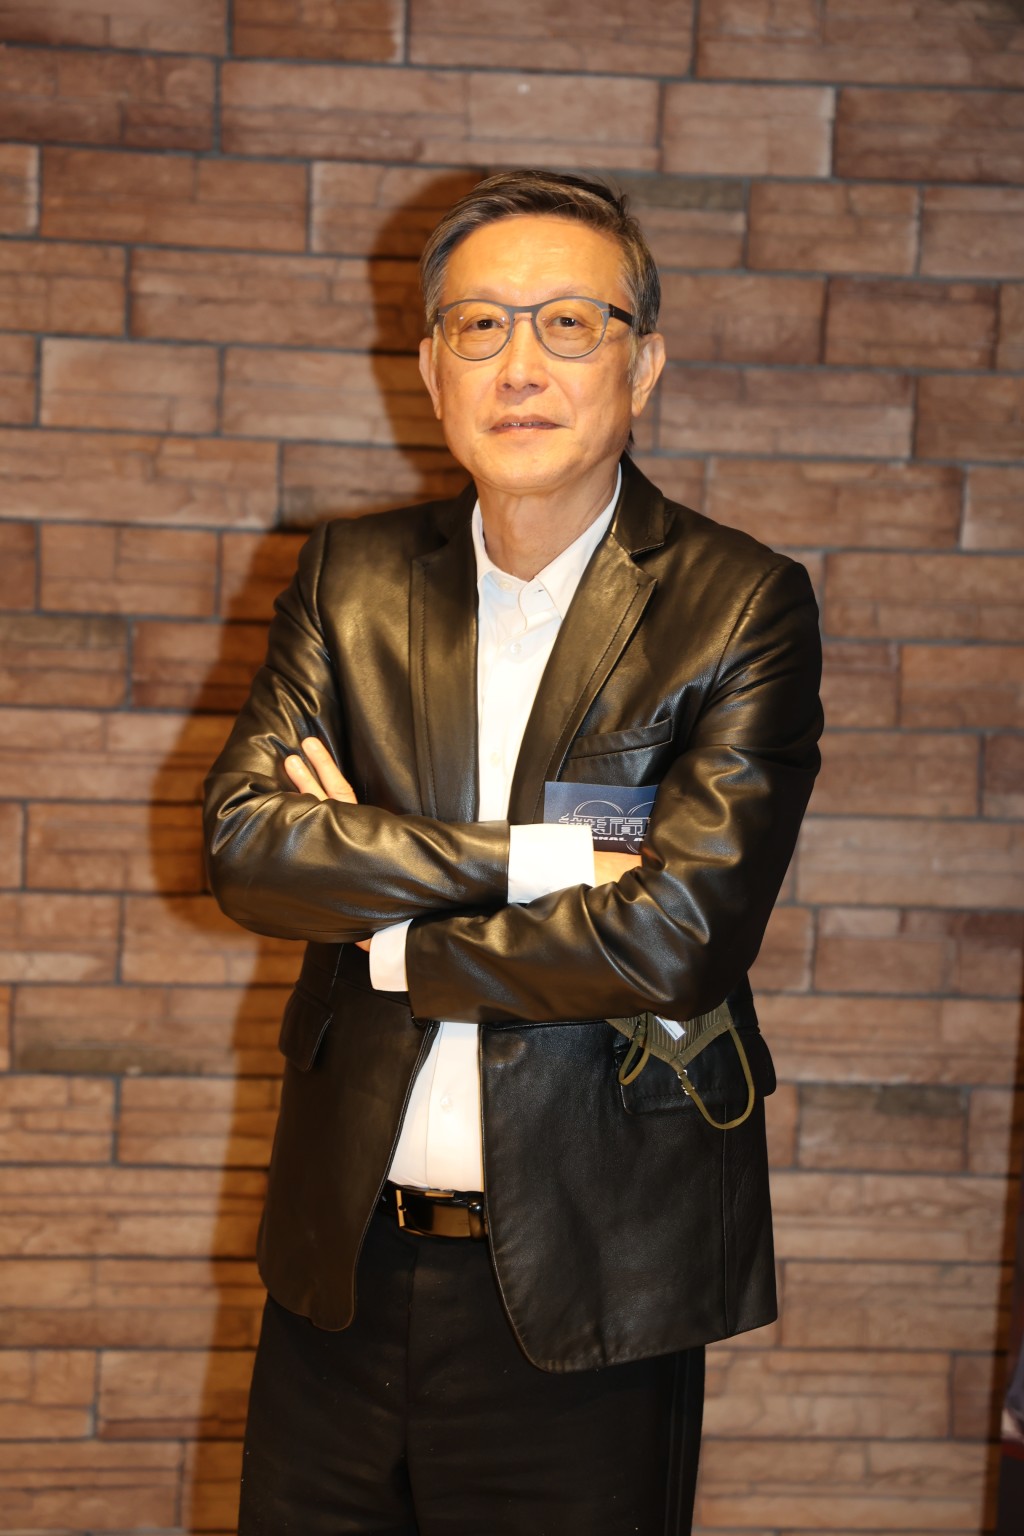 金像大导演刘伟强纵横影坛超过40年。